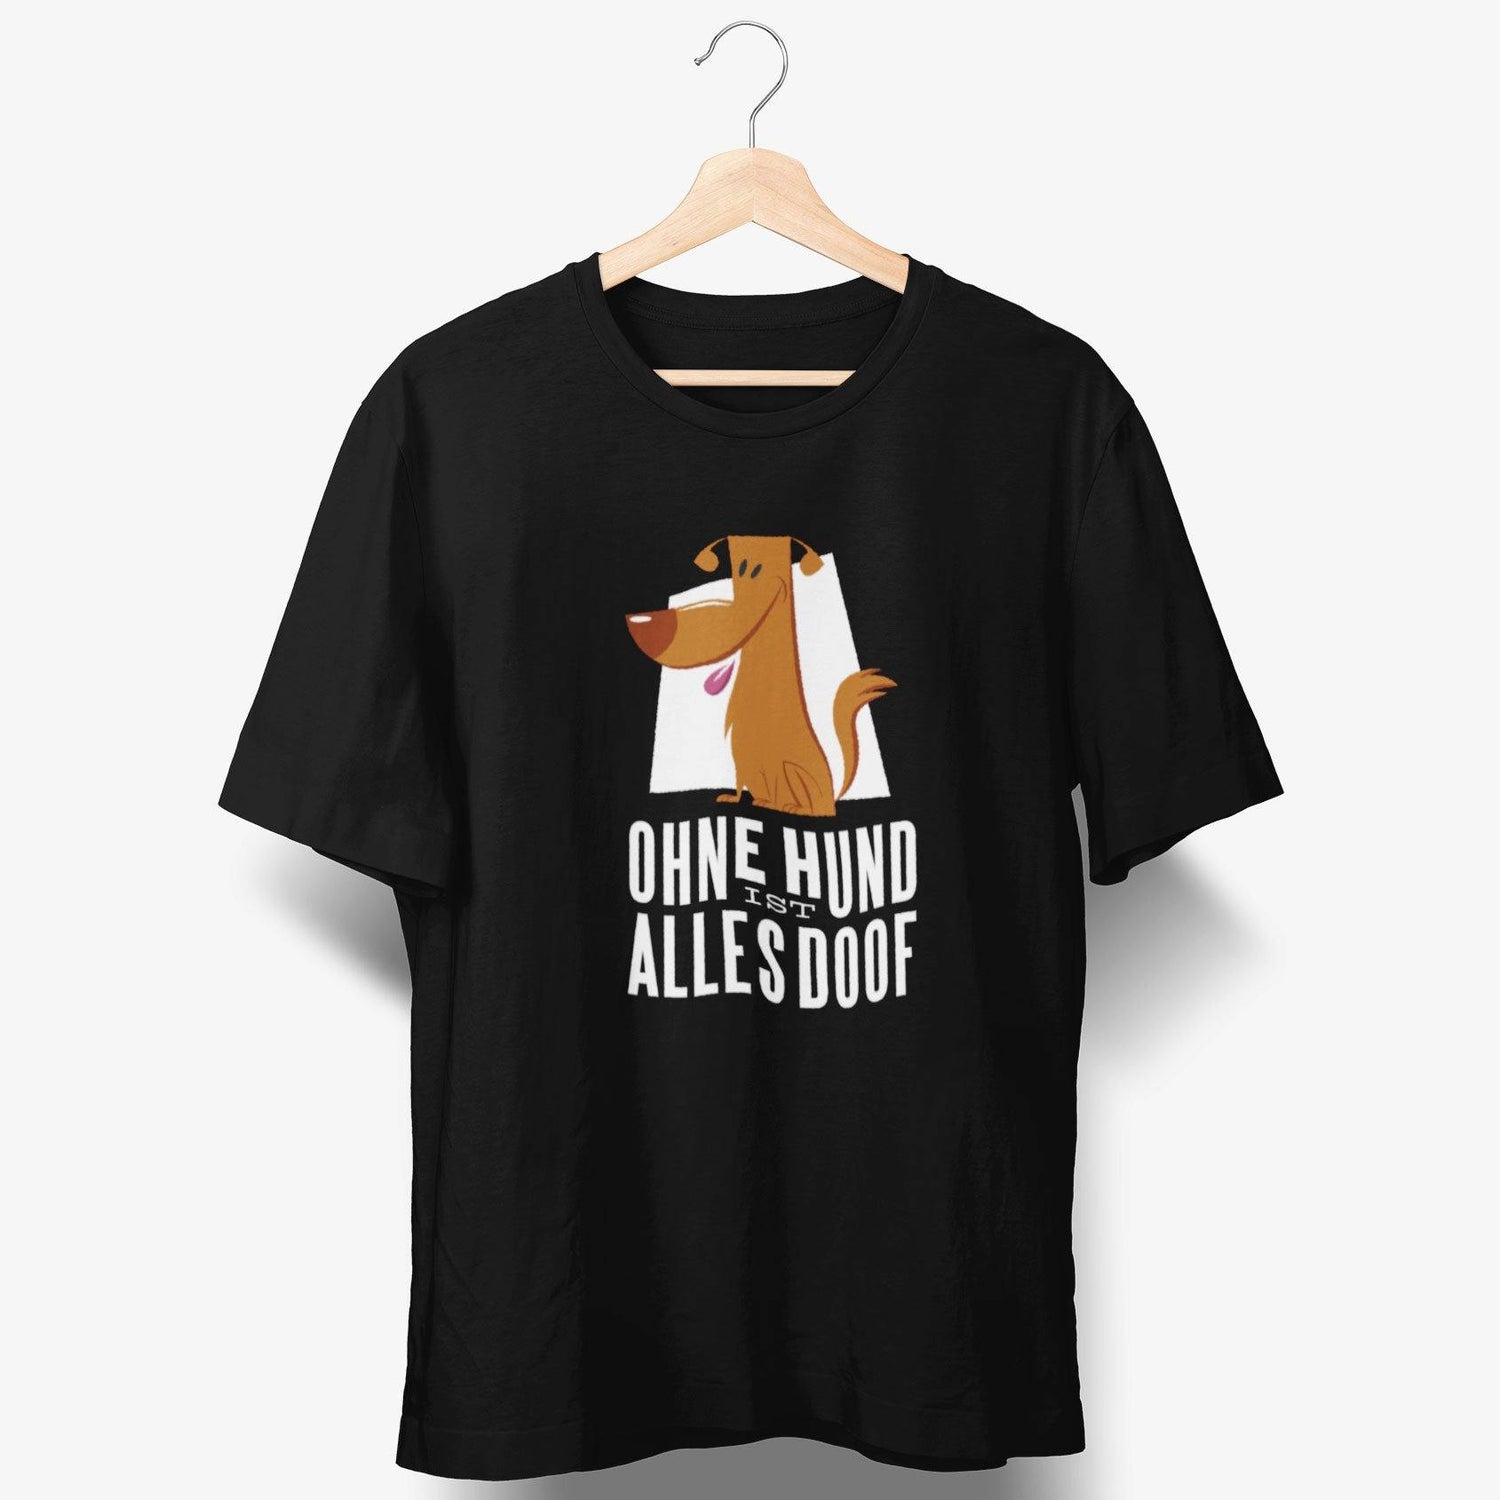 Ohne Hund ist alles doof T-Shirt